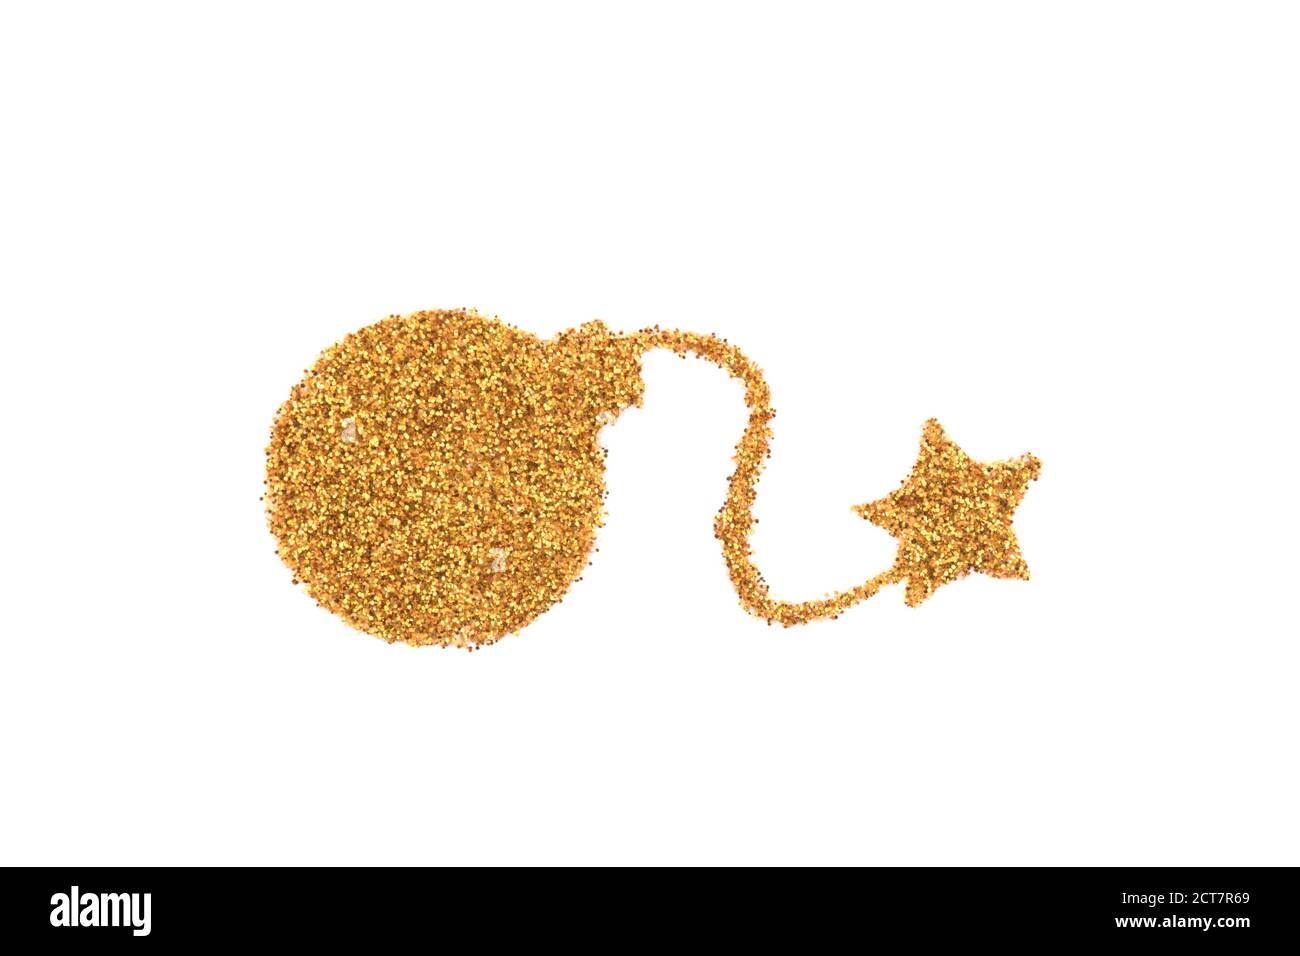 Golden bomb shape made of glitter Stock Photo